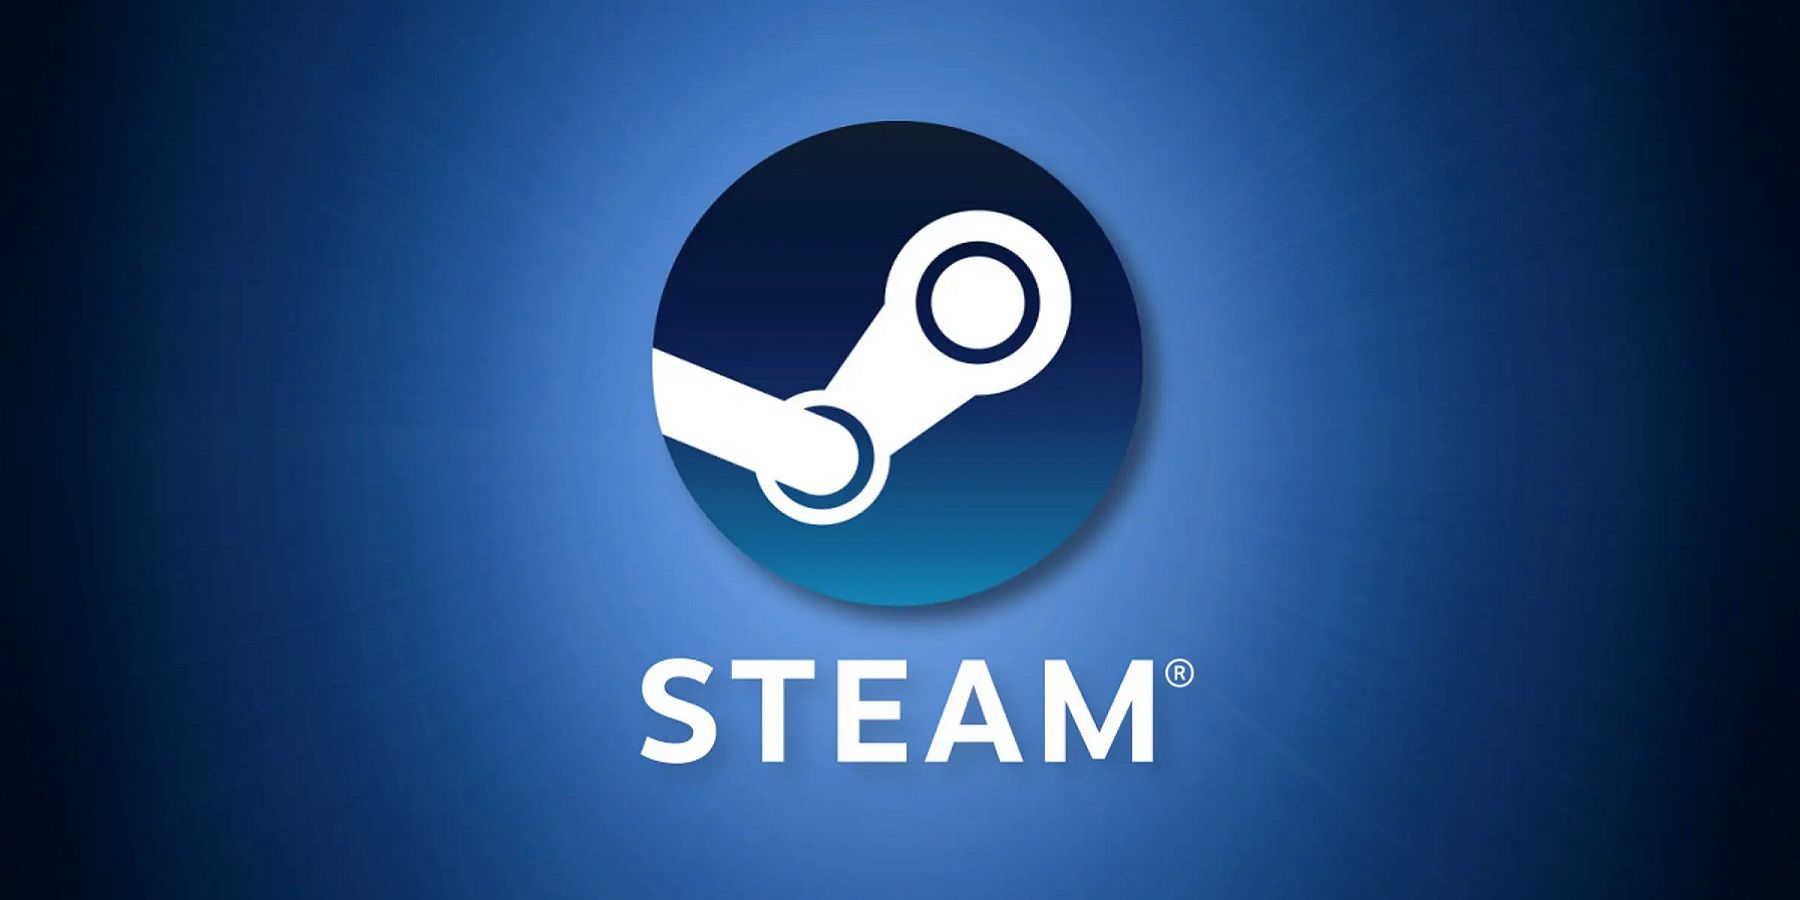 Le logo Steam sur fond bleu foncé.